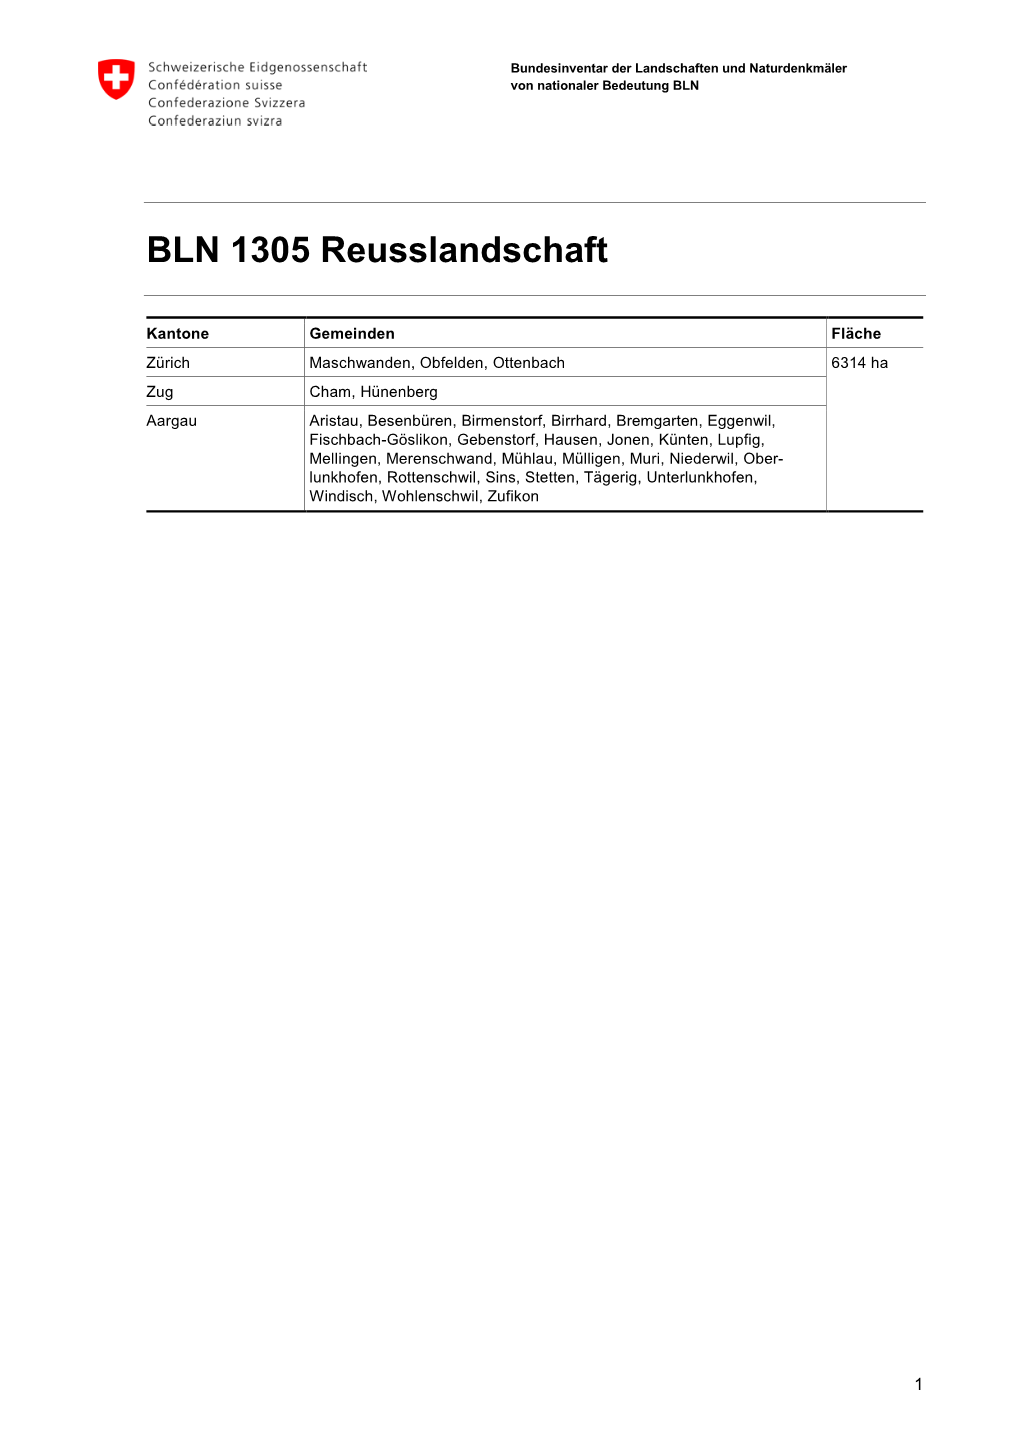 BLN 1305 Reusslandschaft